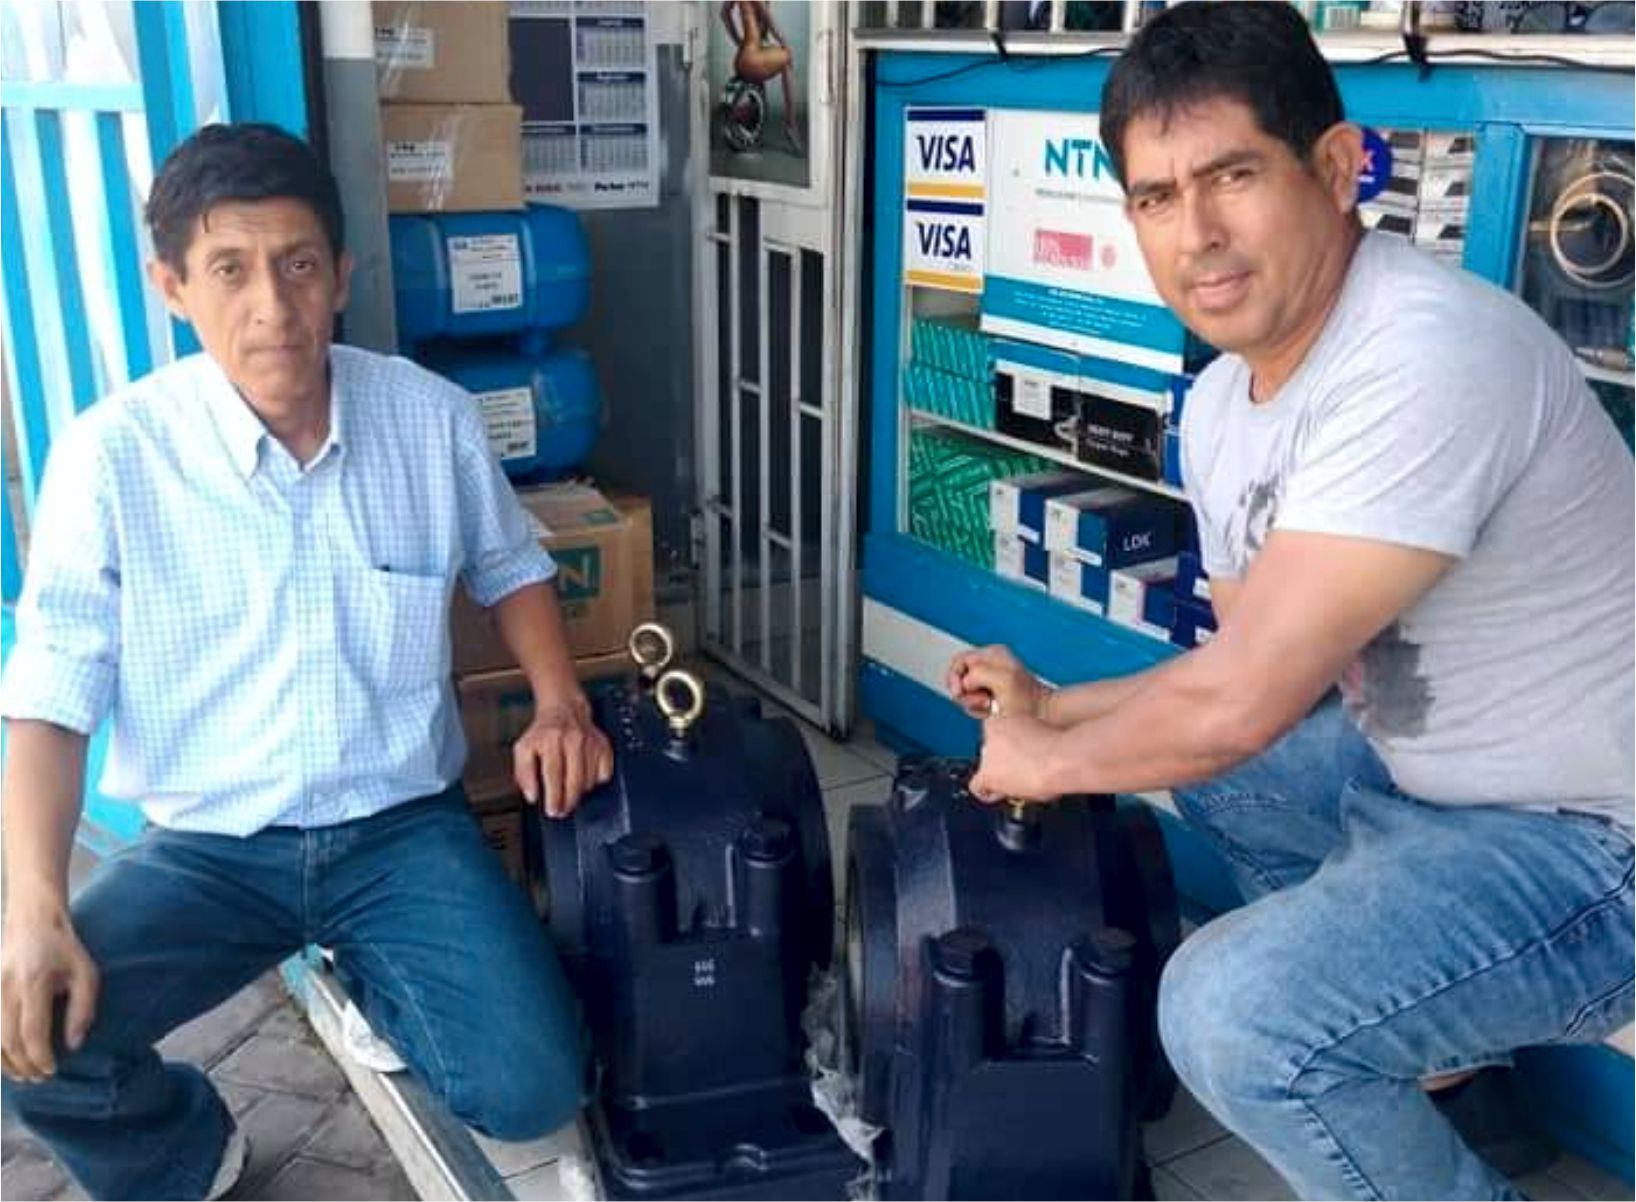 Pedidos listos para entregar al sector pesquero desde nuestros almacenes de la Av. Enrique Meiggs N° 300 (Rodimport SRL - Chimbote, Perú)